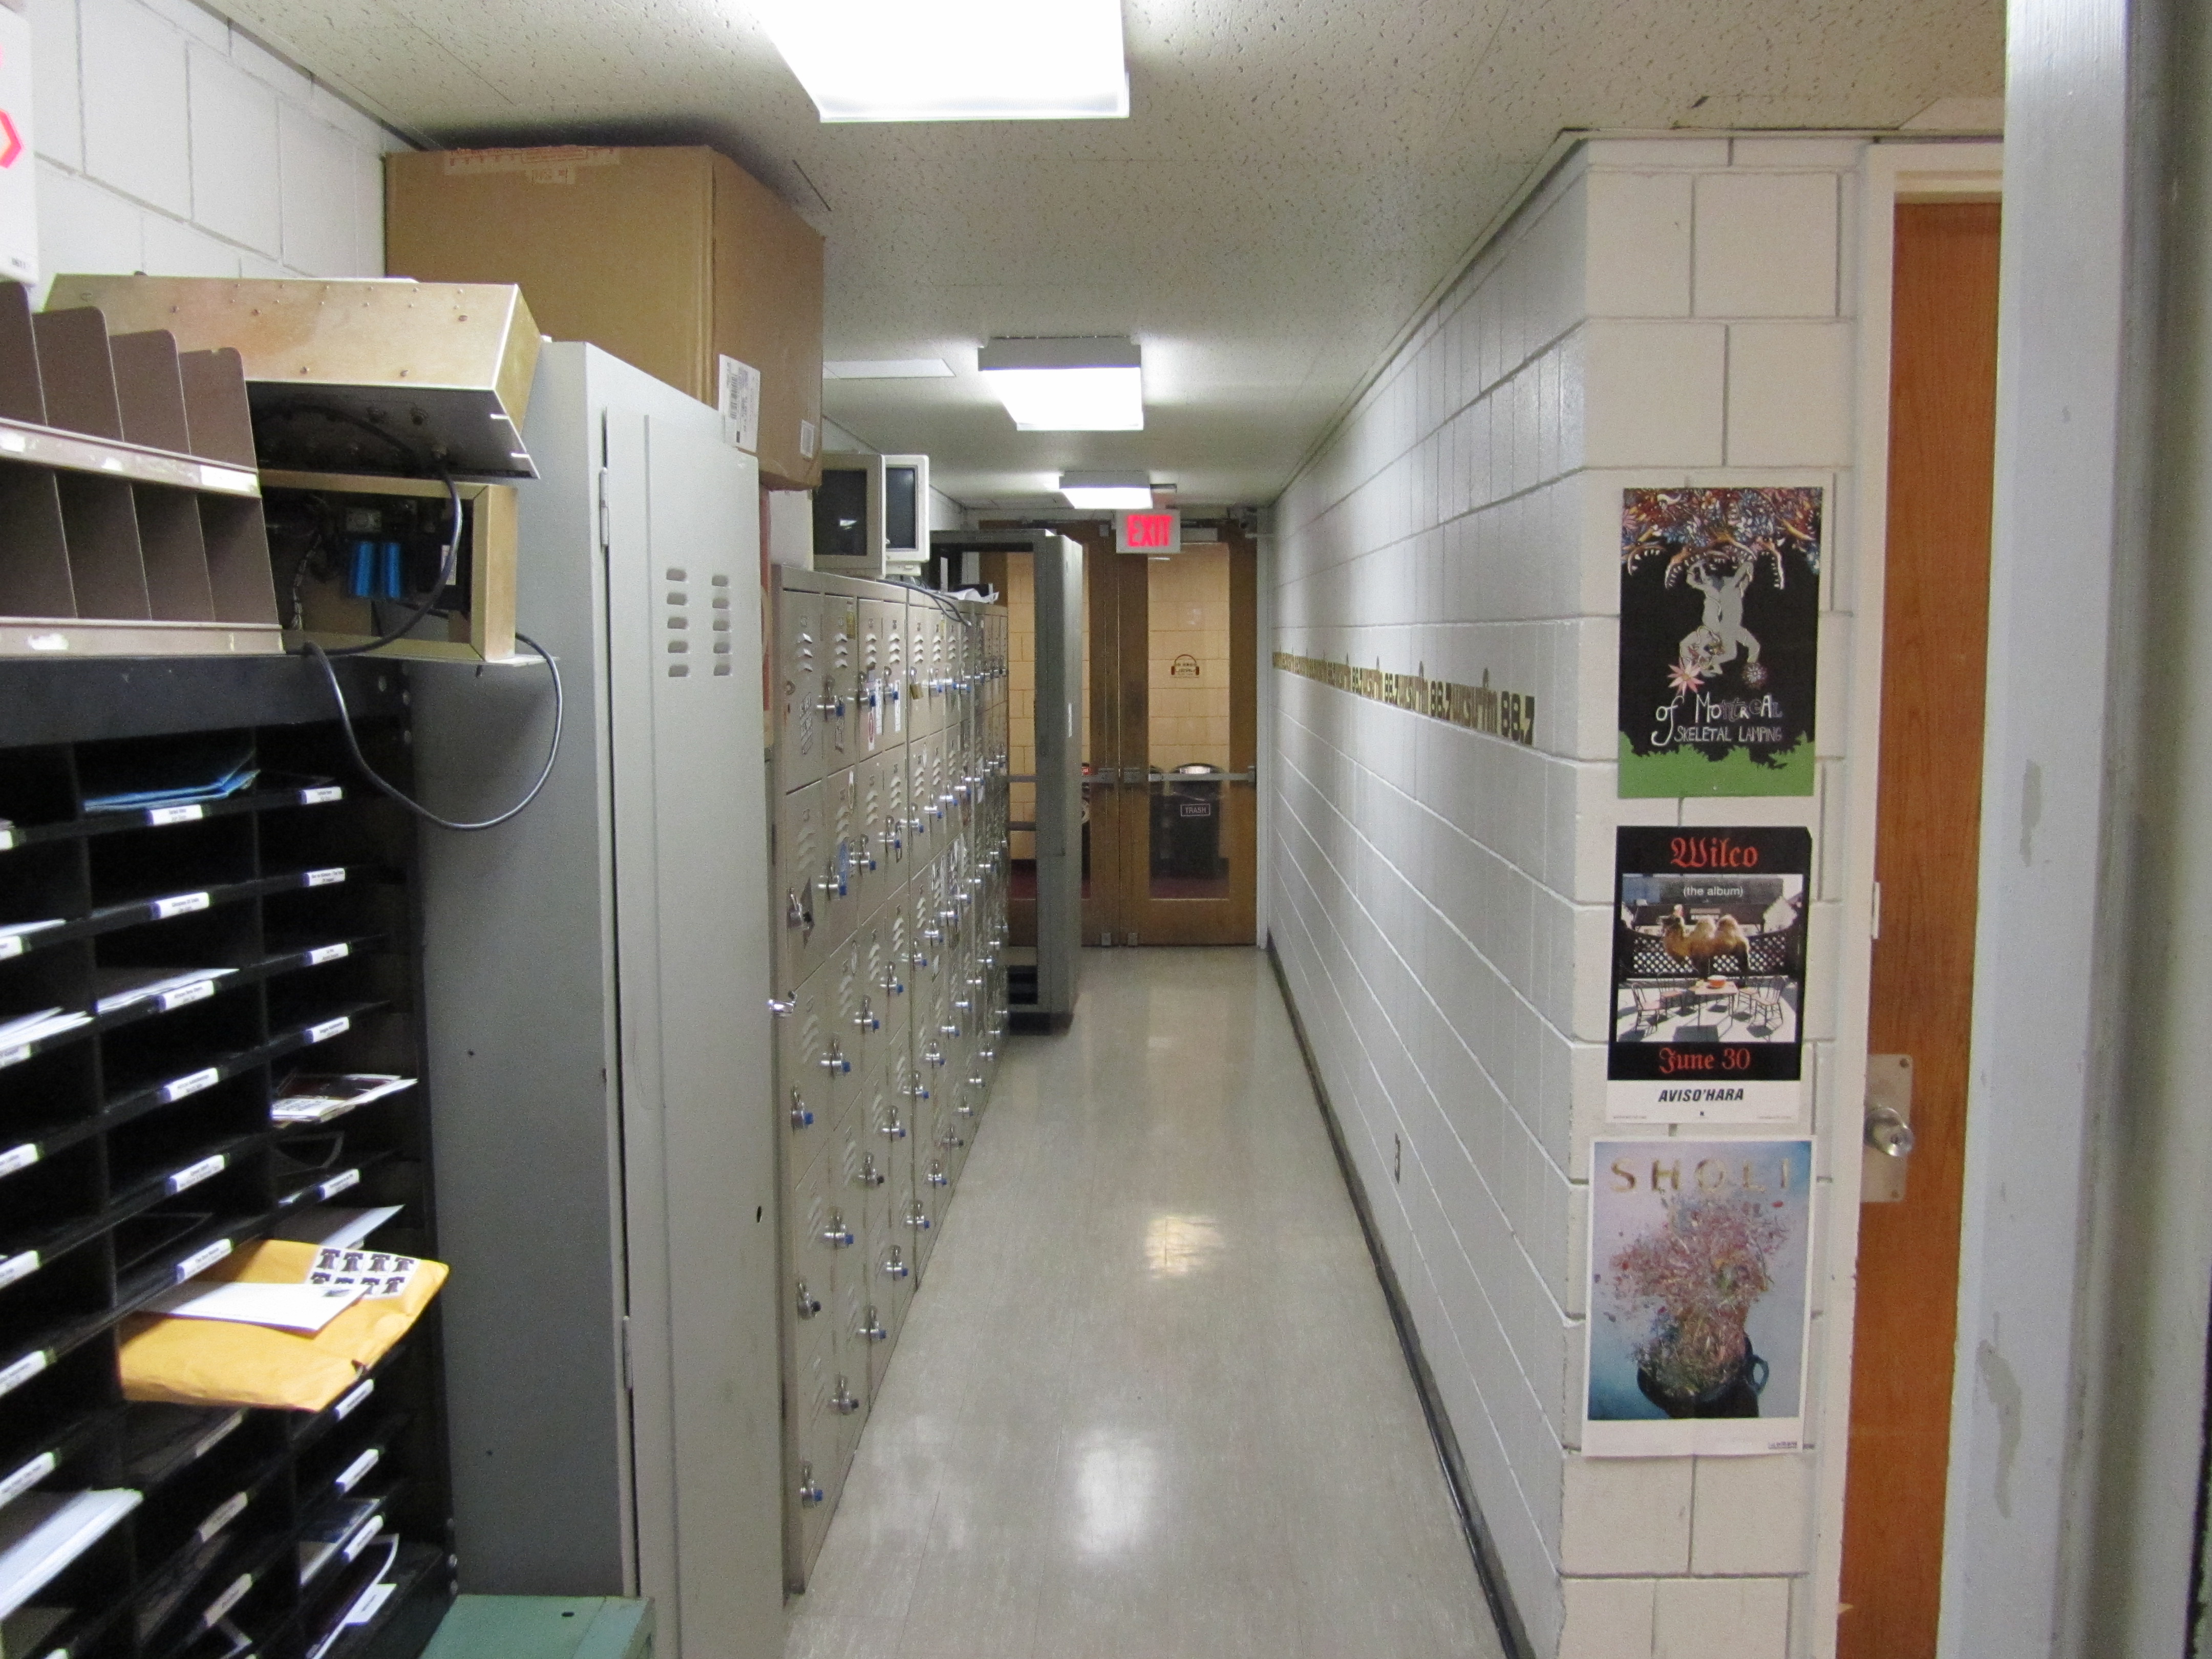 2010 WRSU Hallway